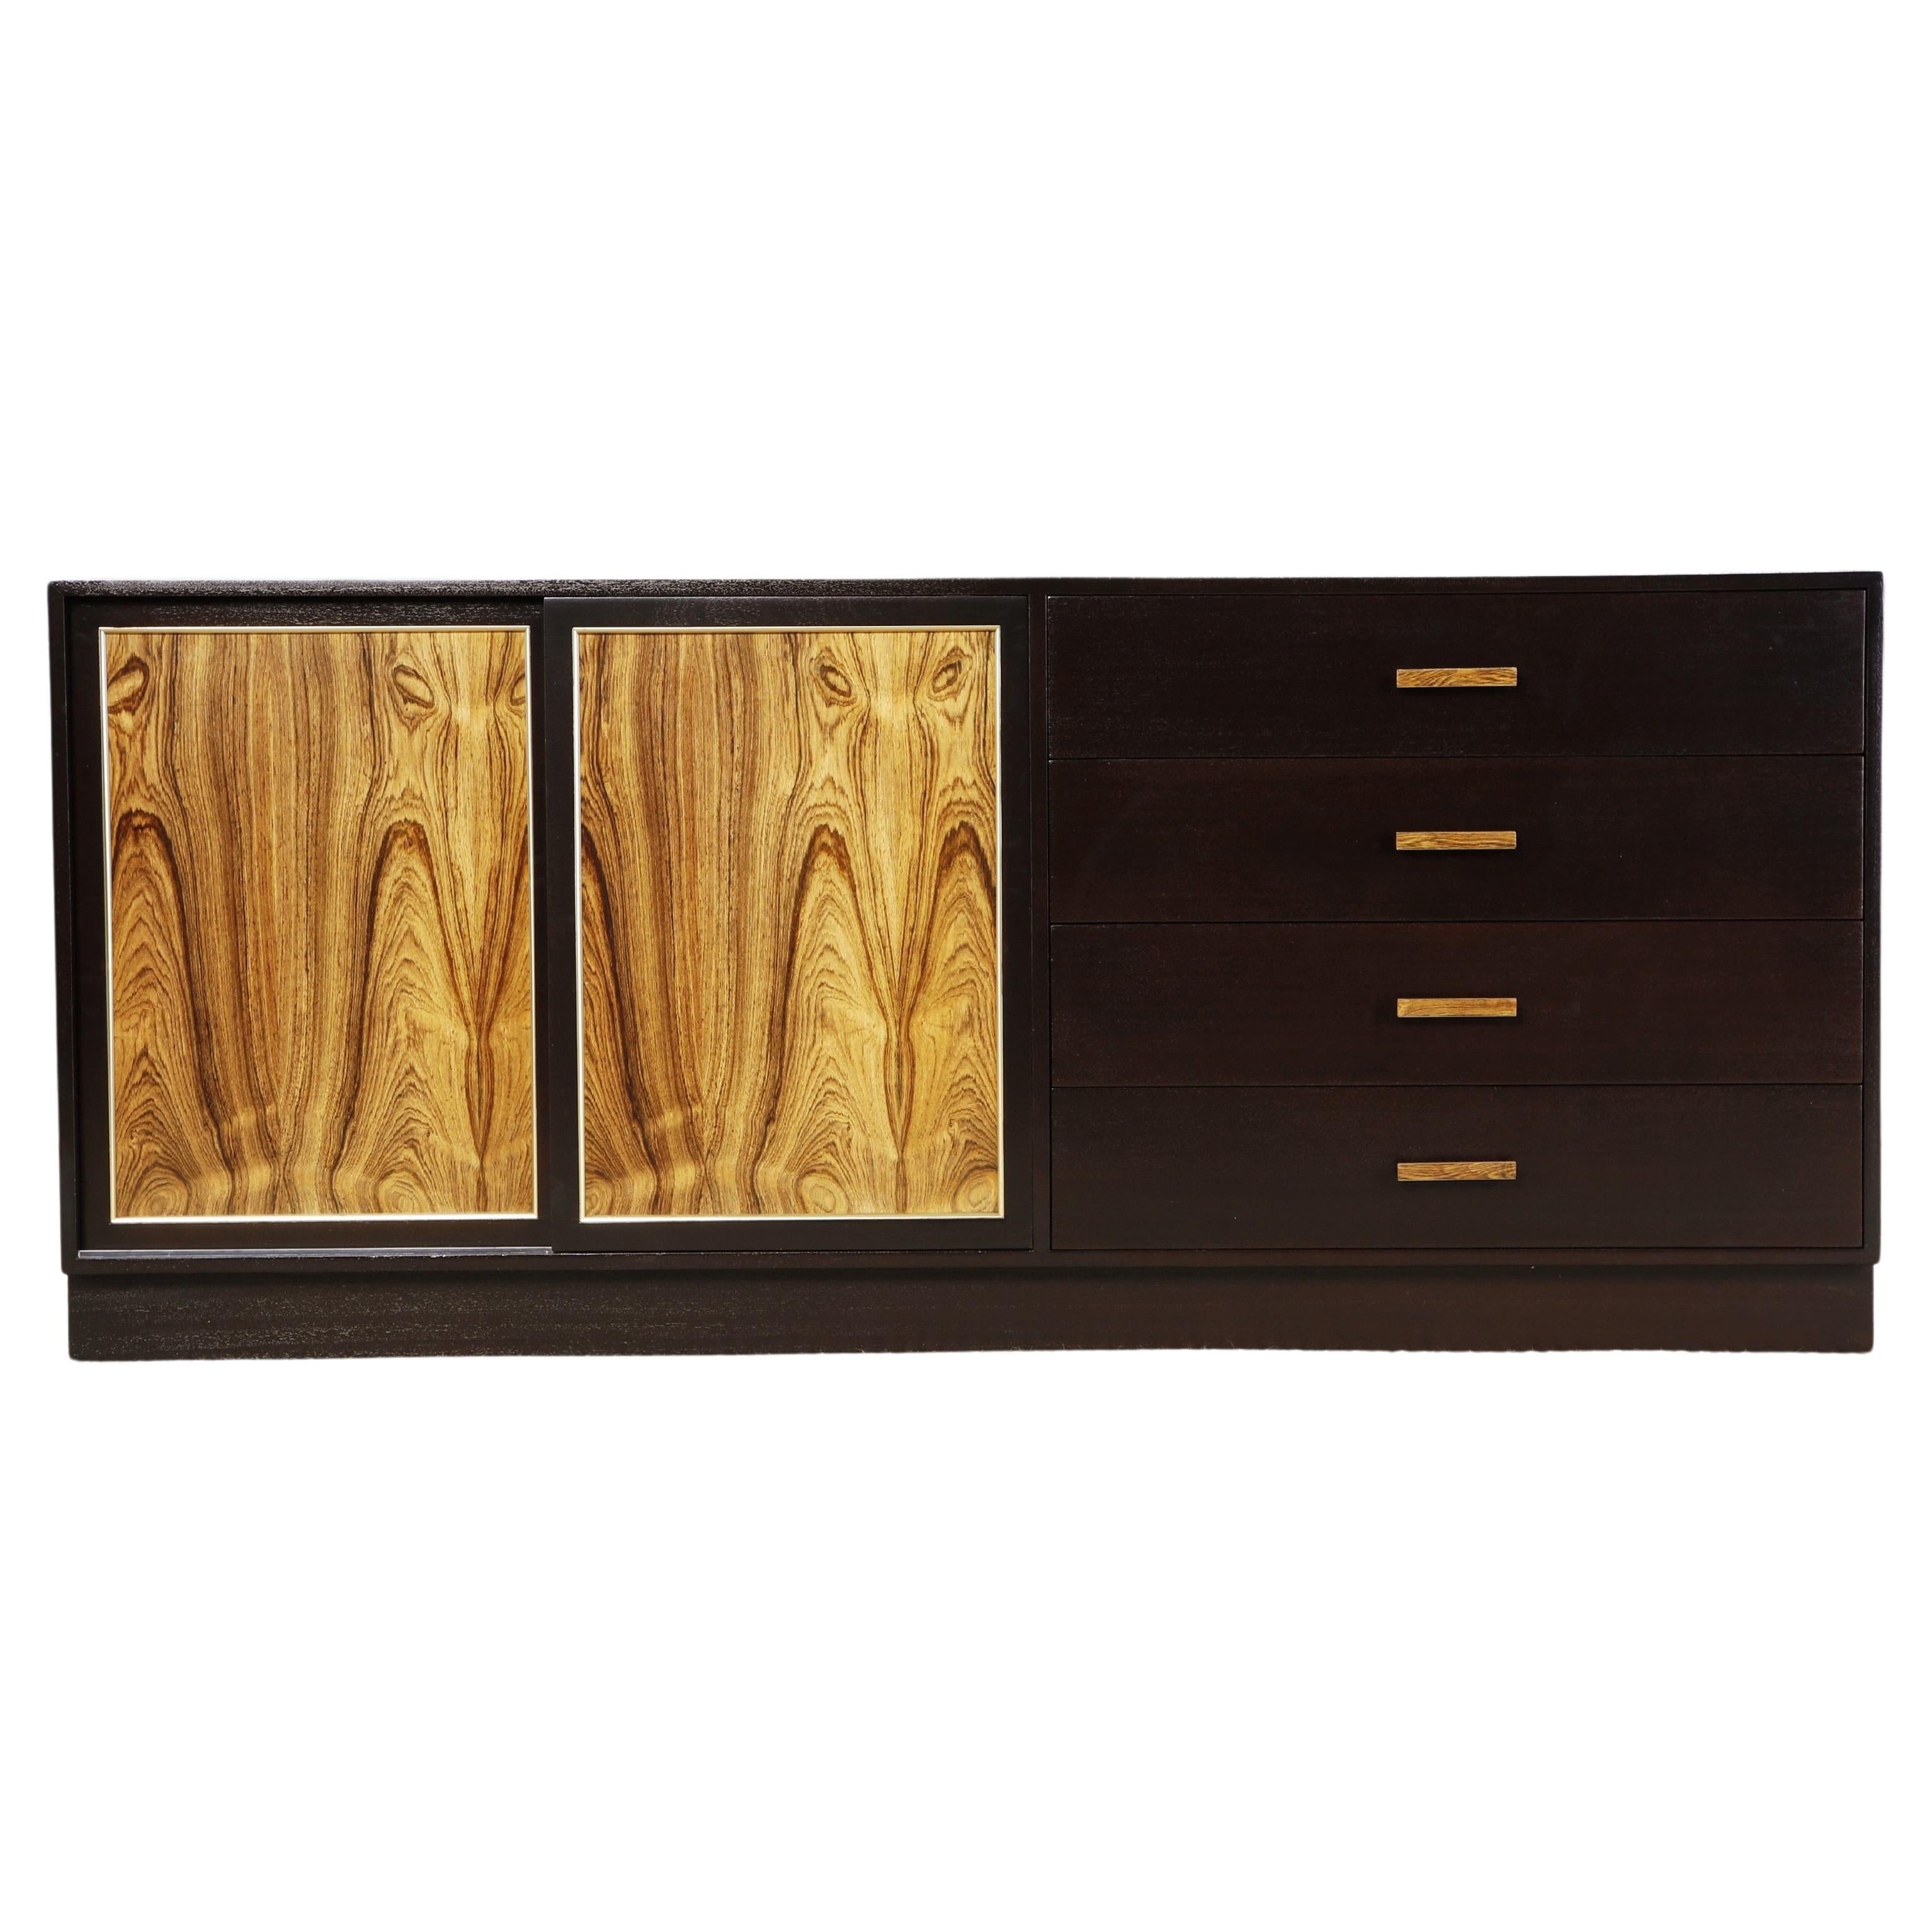 Harvey Probber Dresser, Credenza or Sideboard, c 1960, Refinished, Signed